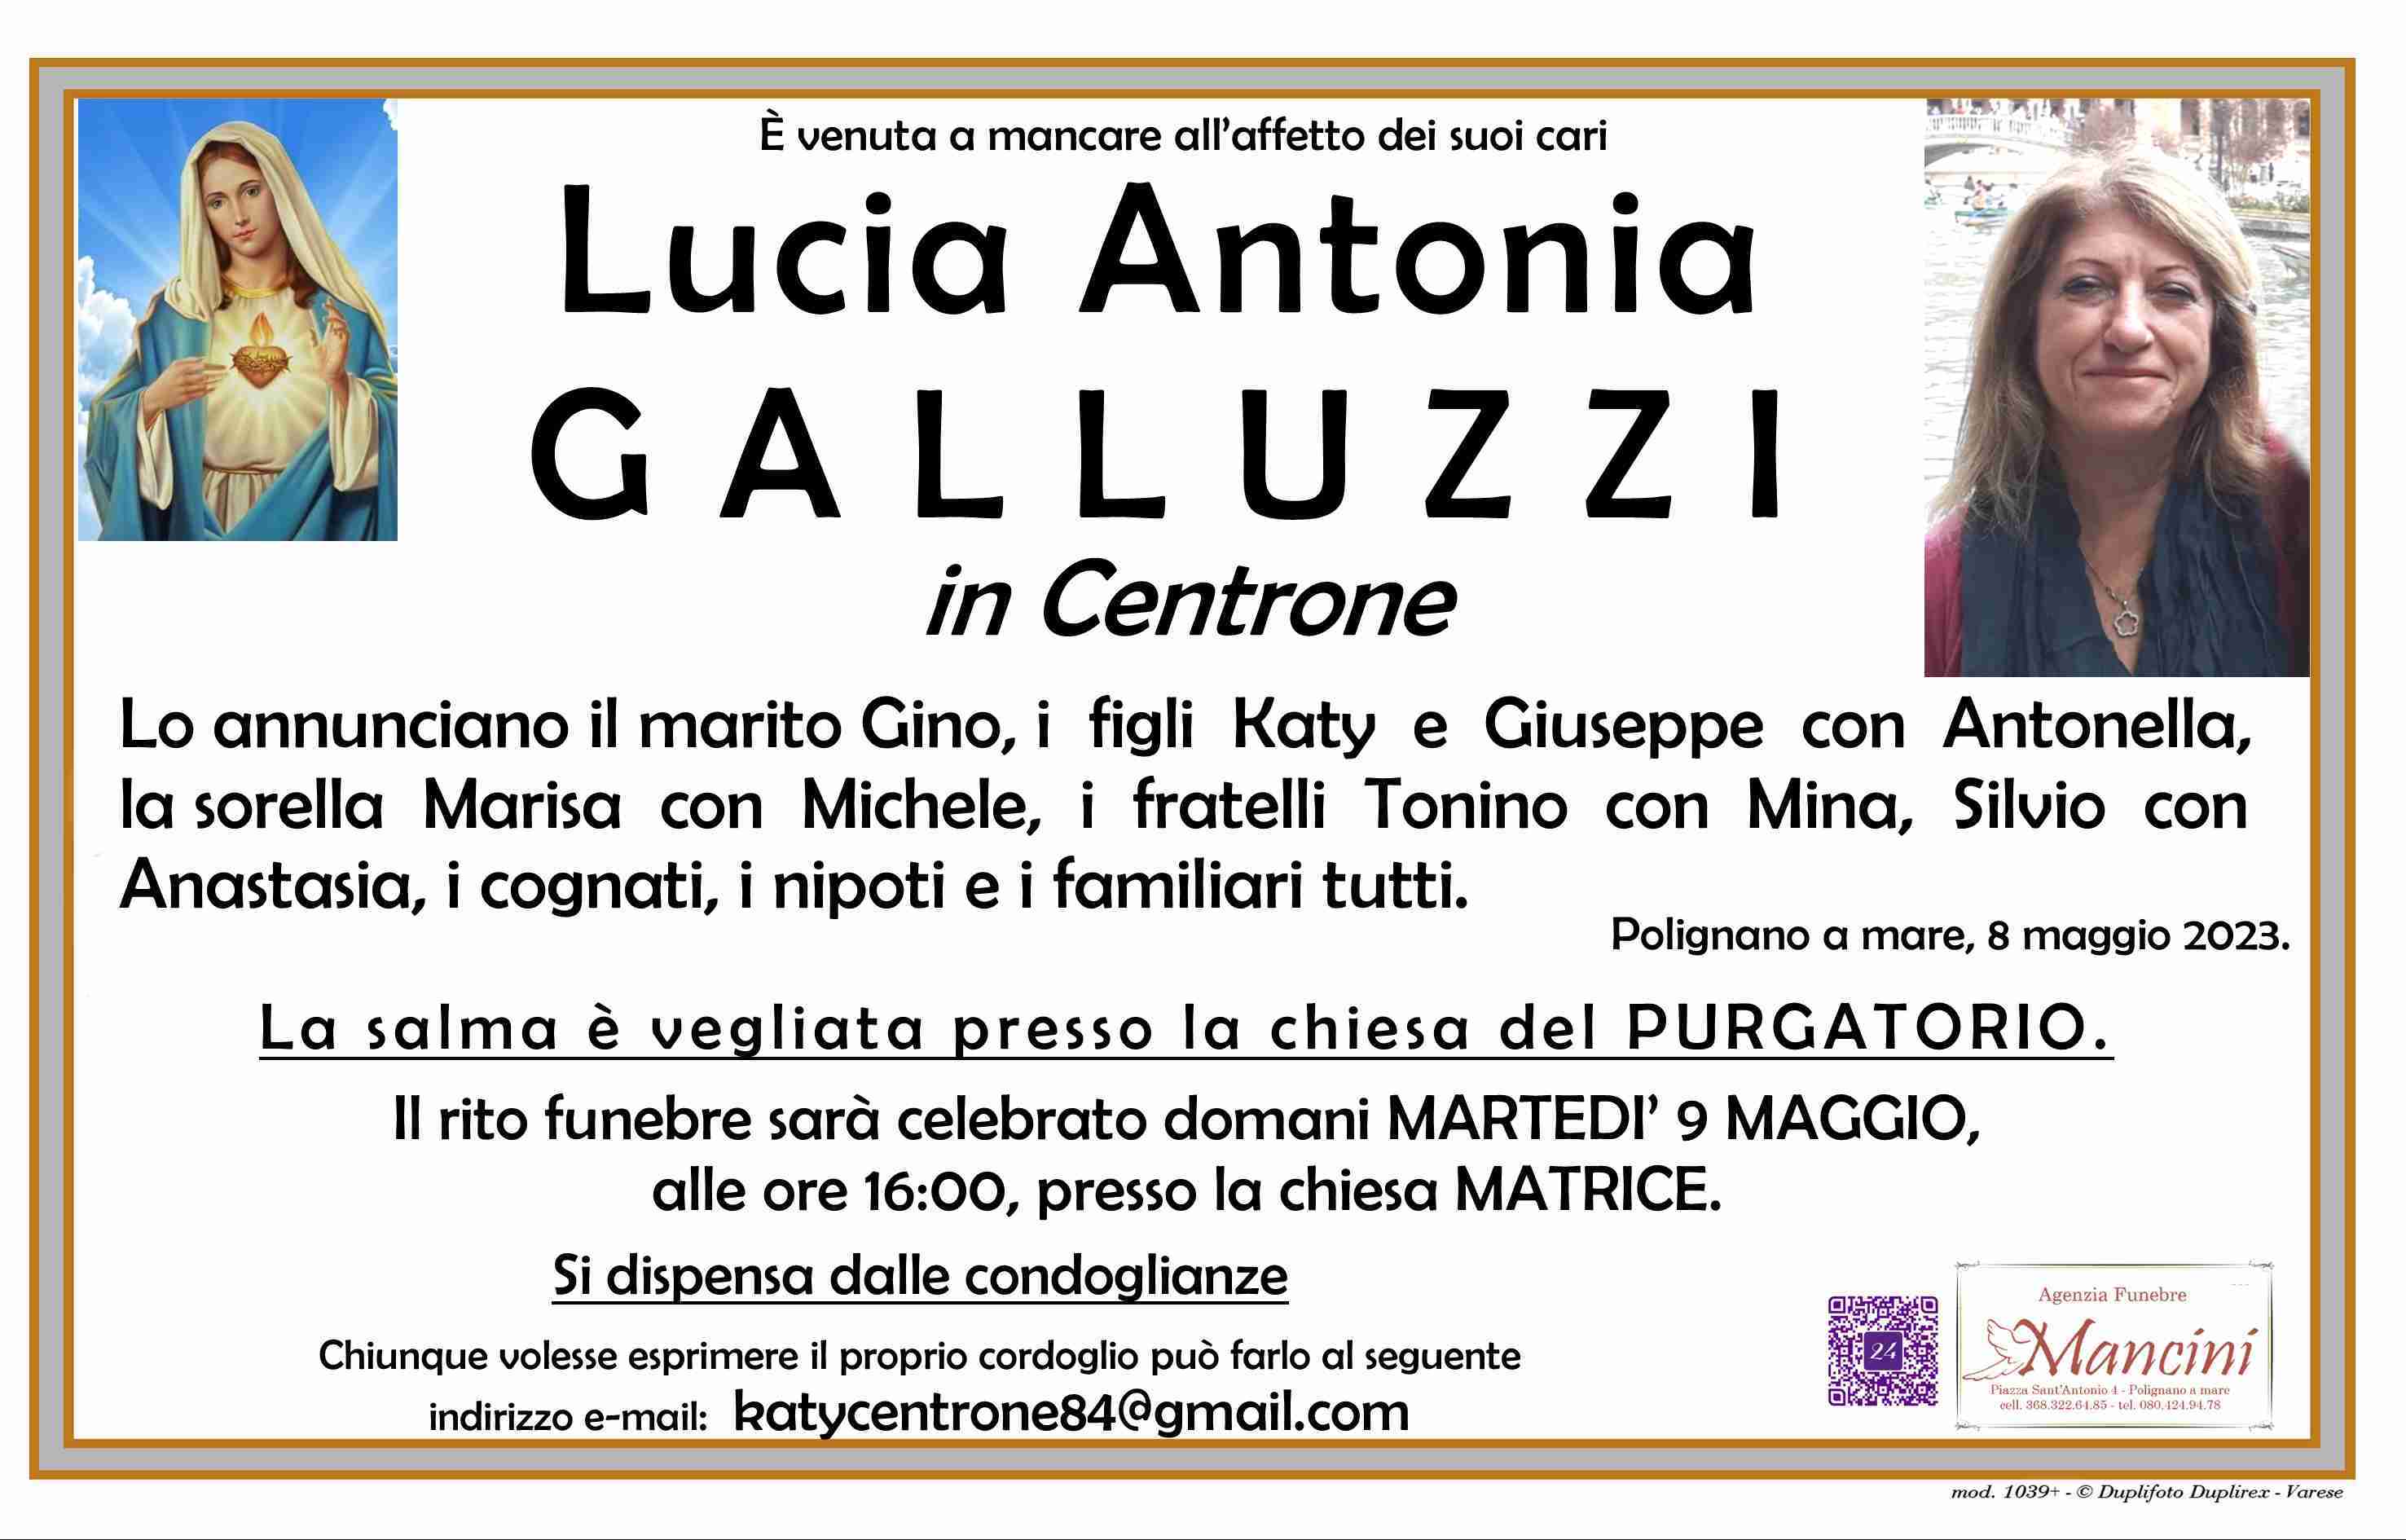 Lucia Antonia Galluzzi